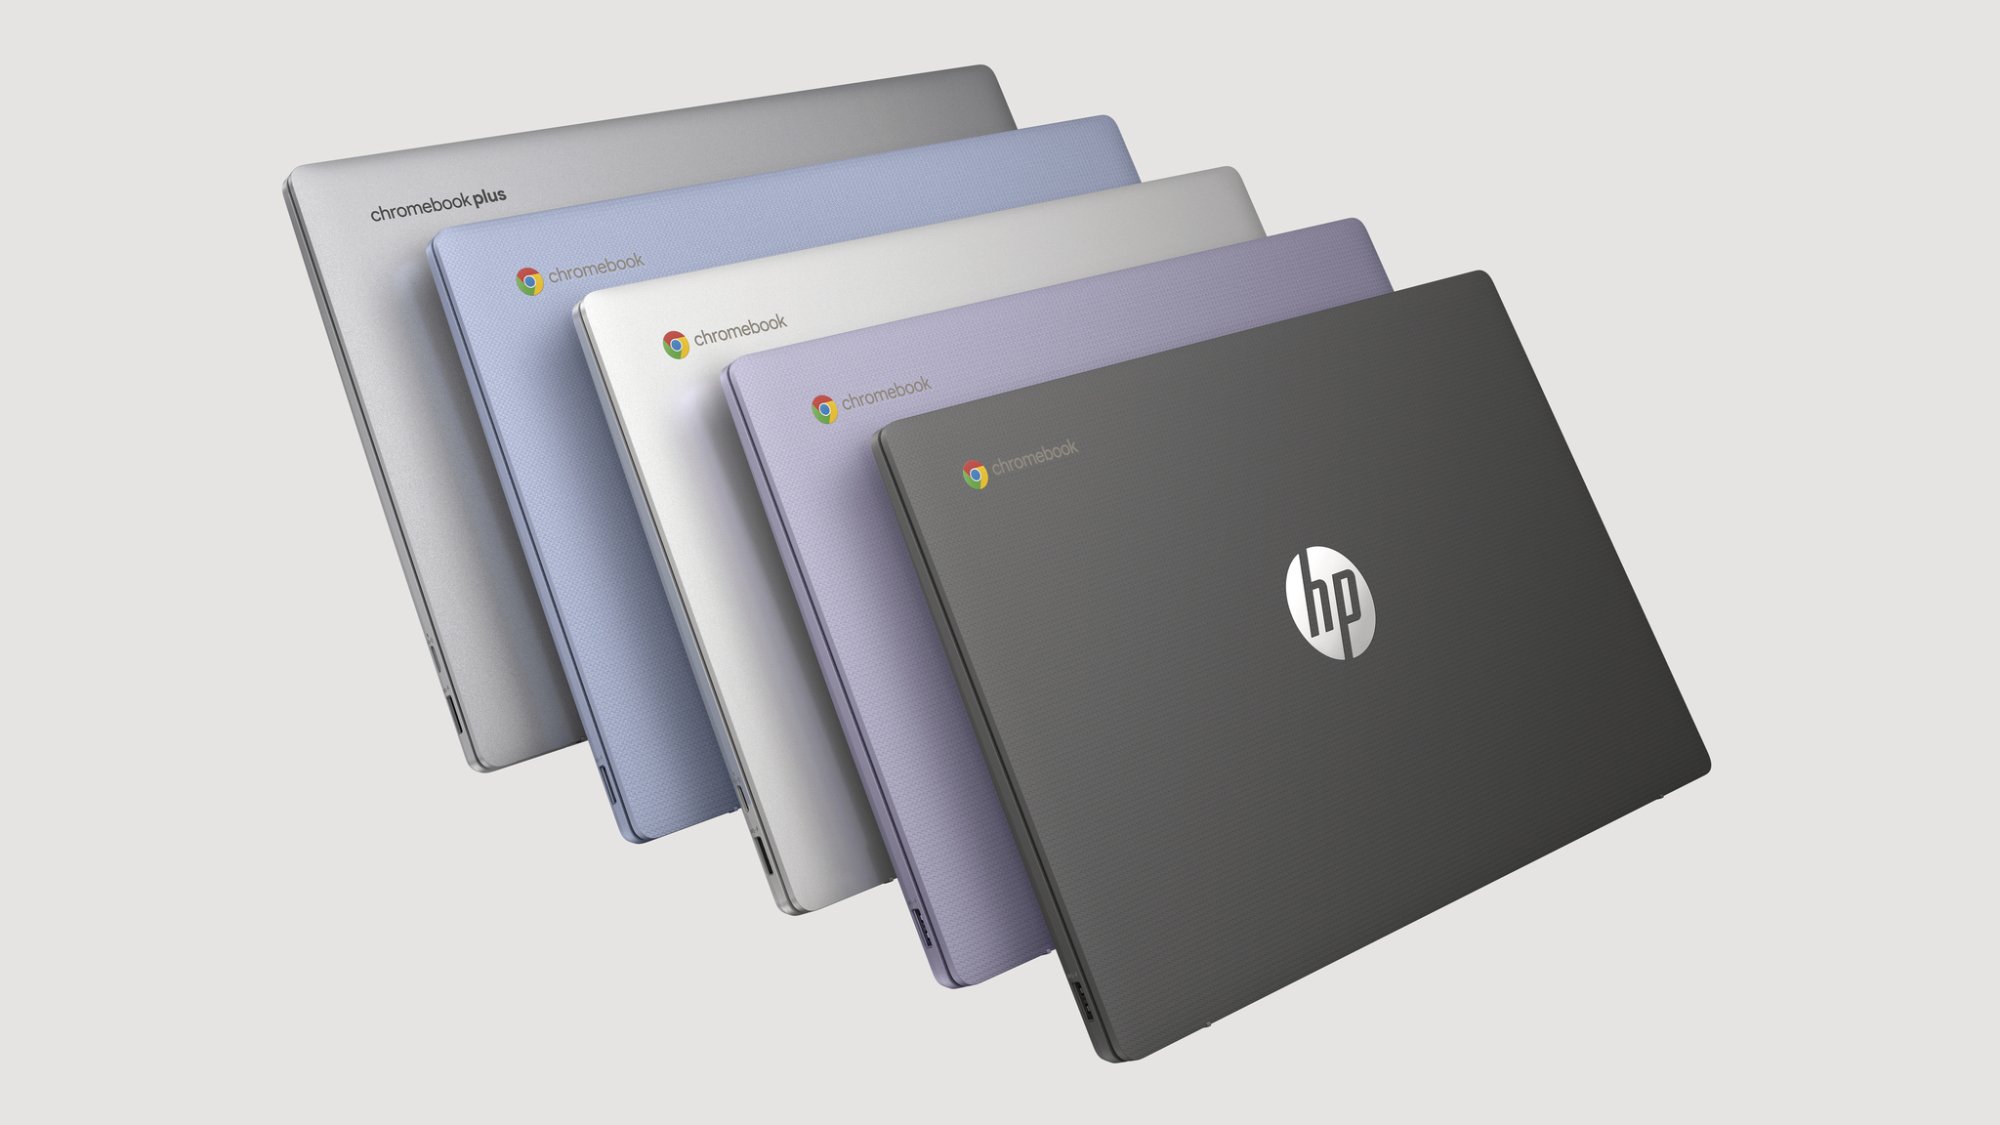 cinq couleurs différentes du Chromebook HP 14 pouces alignées sur un fond gris clair